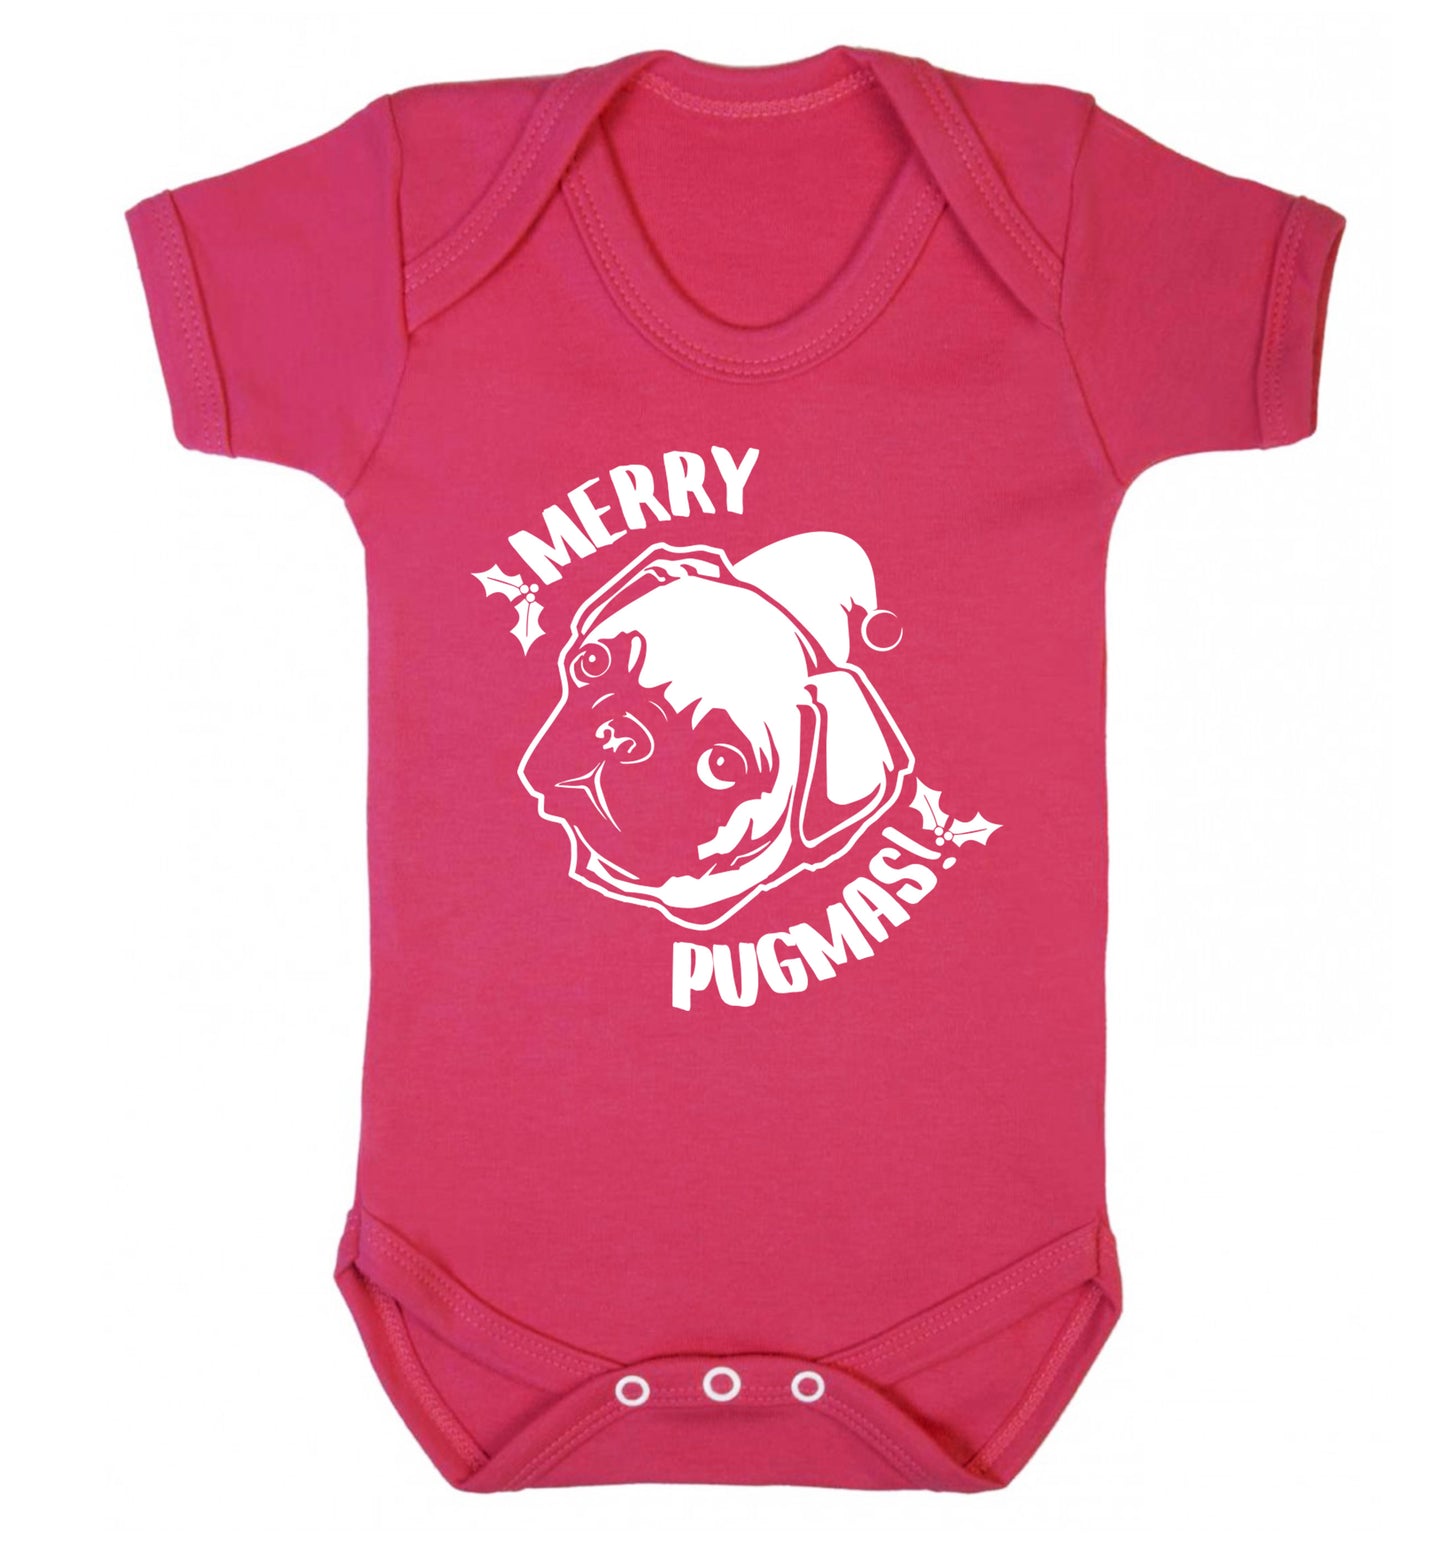 Merry Pugmas Baby Vest dark pink 18-24 months